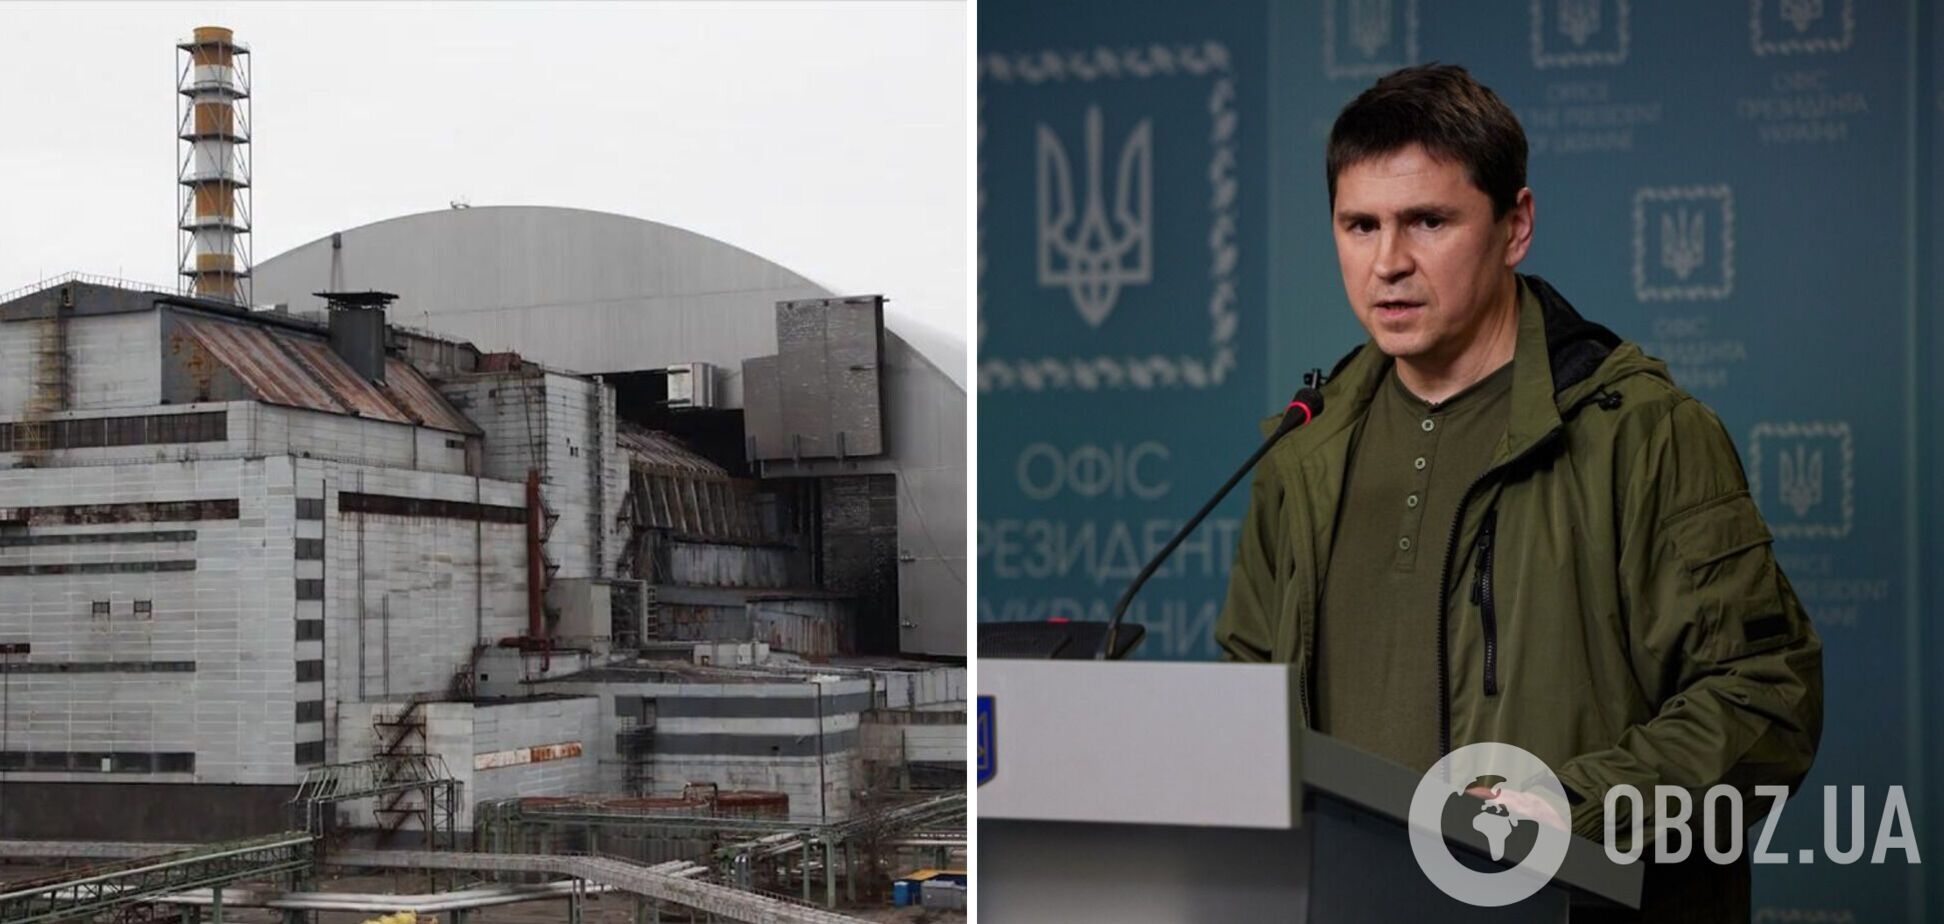 Ситуація в Чорнобилі загалом дуже небезпечна, це загроза для всієї Європи, – Подоляк